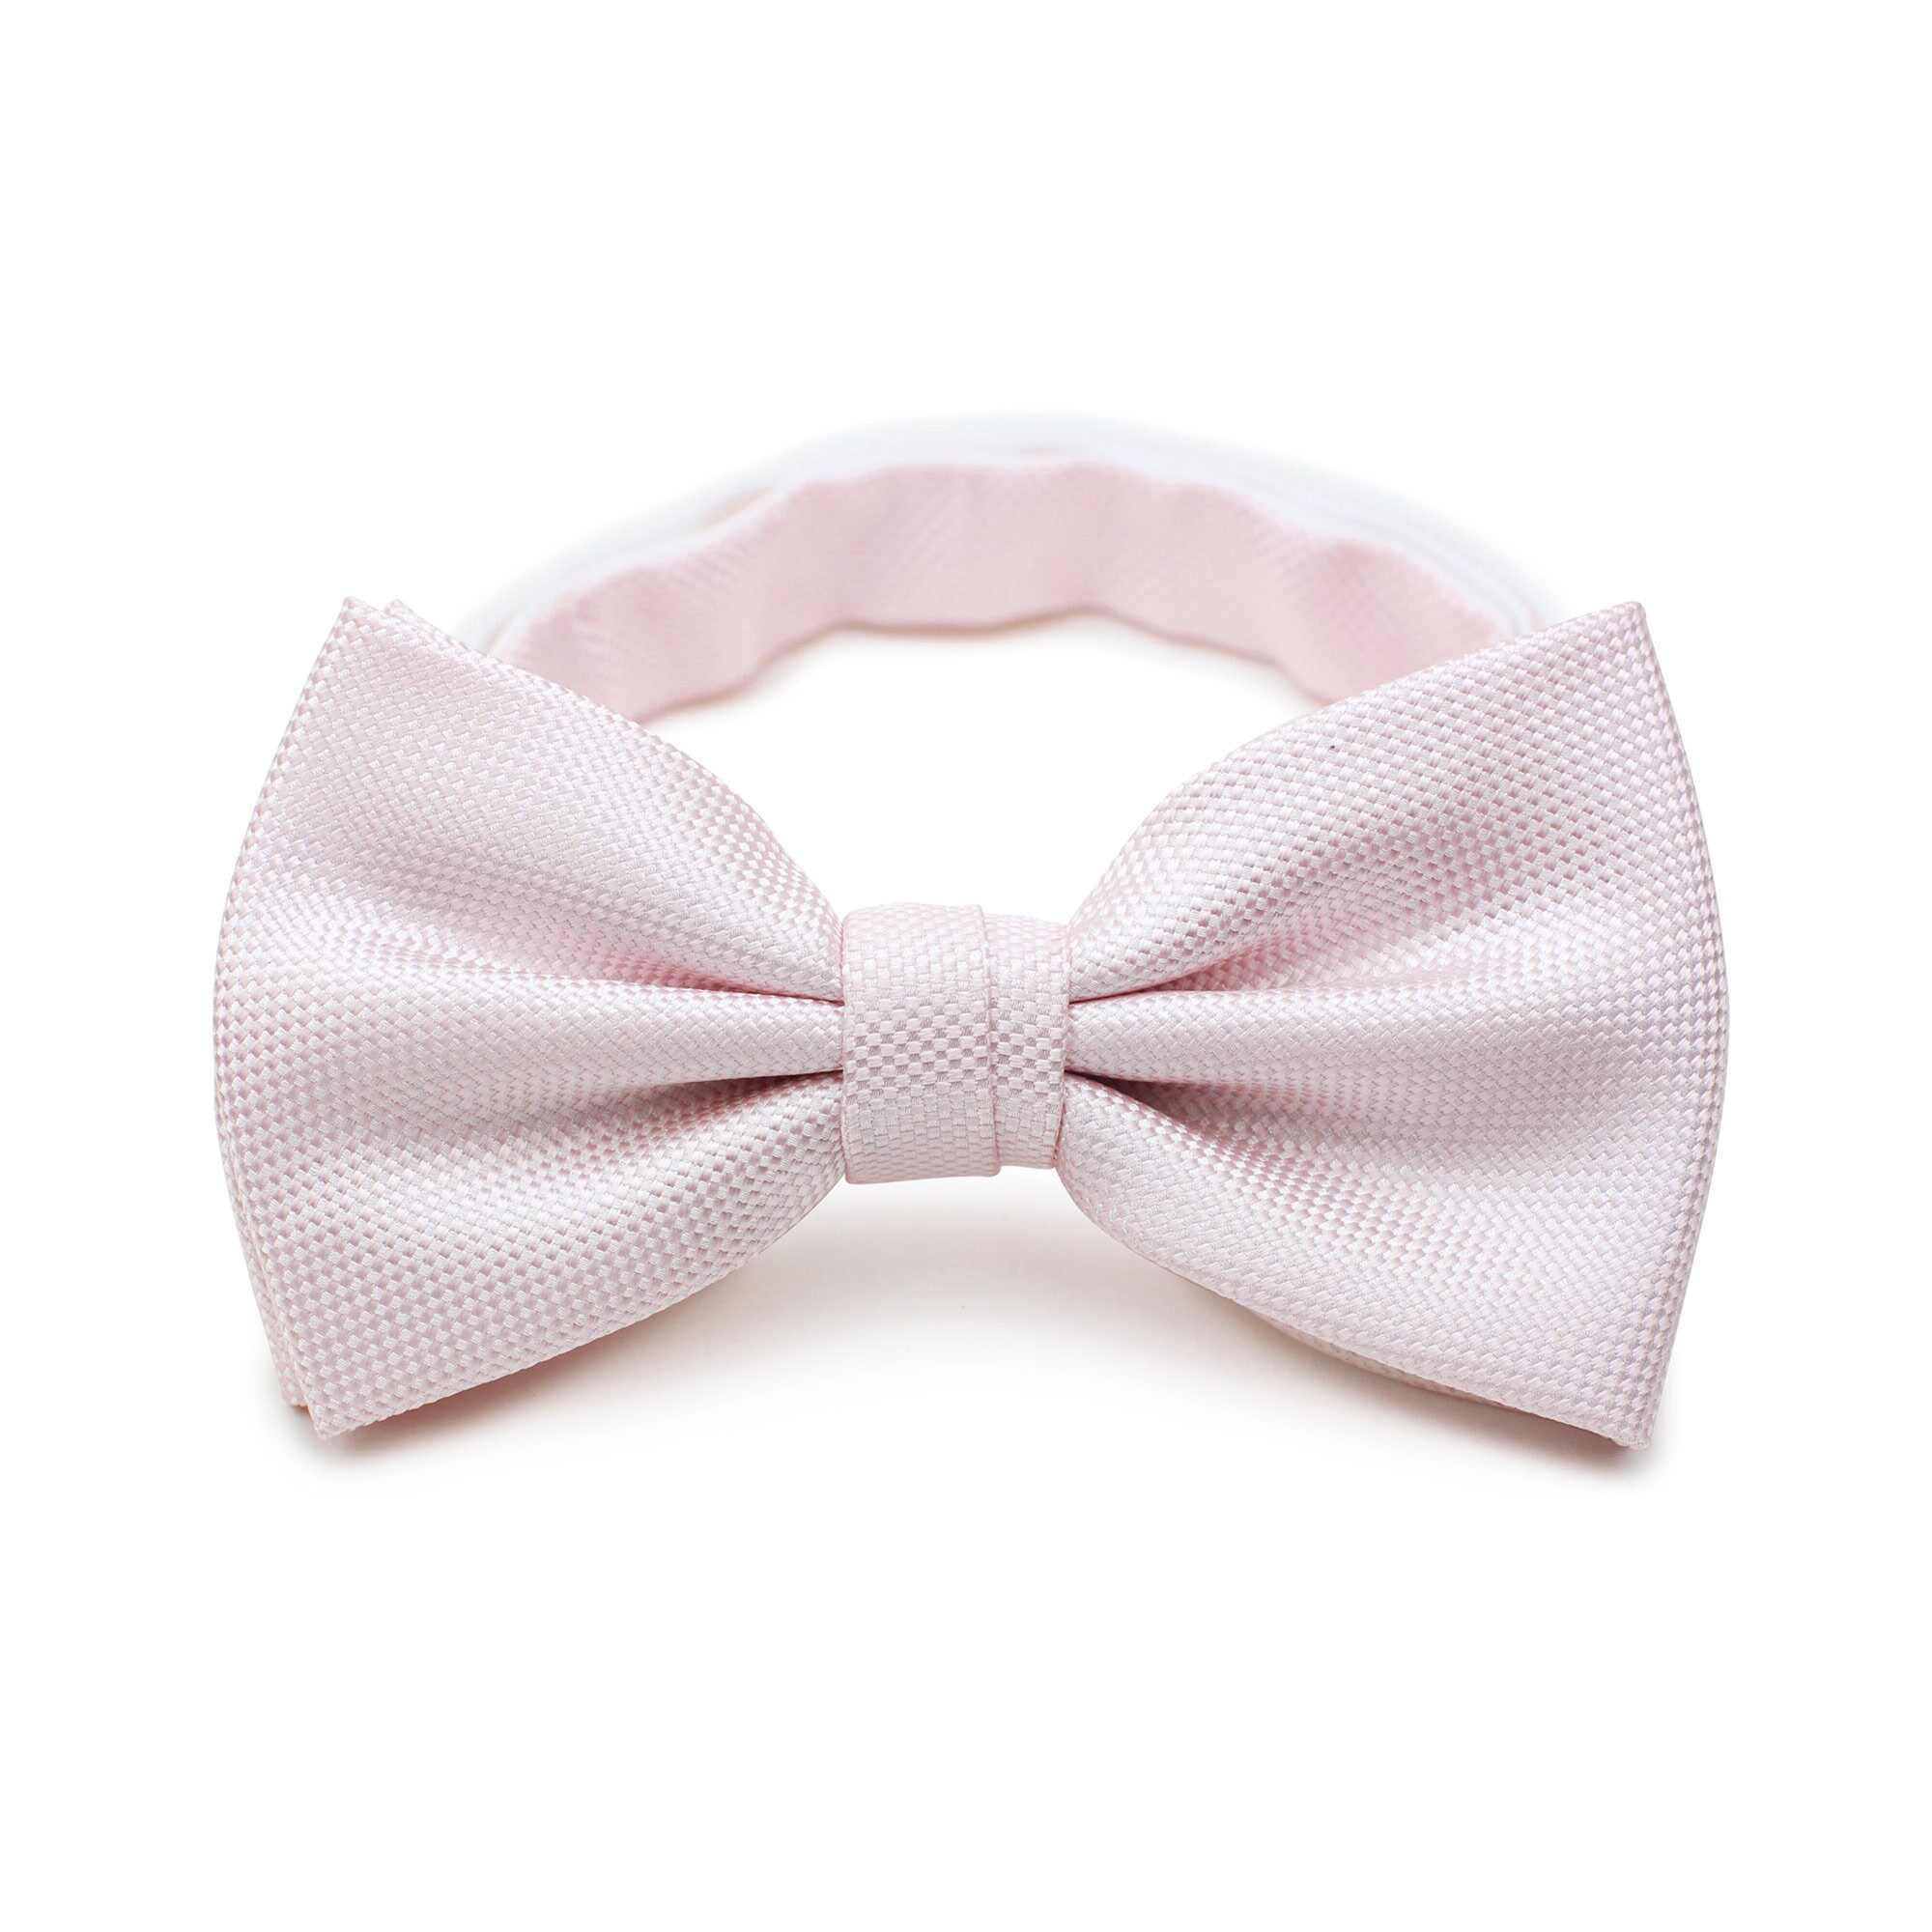 Matte Texture Mens Tie in Blush Formal Wedding Necktie in - Etsy